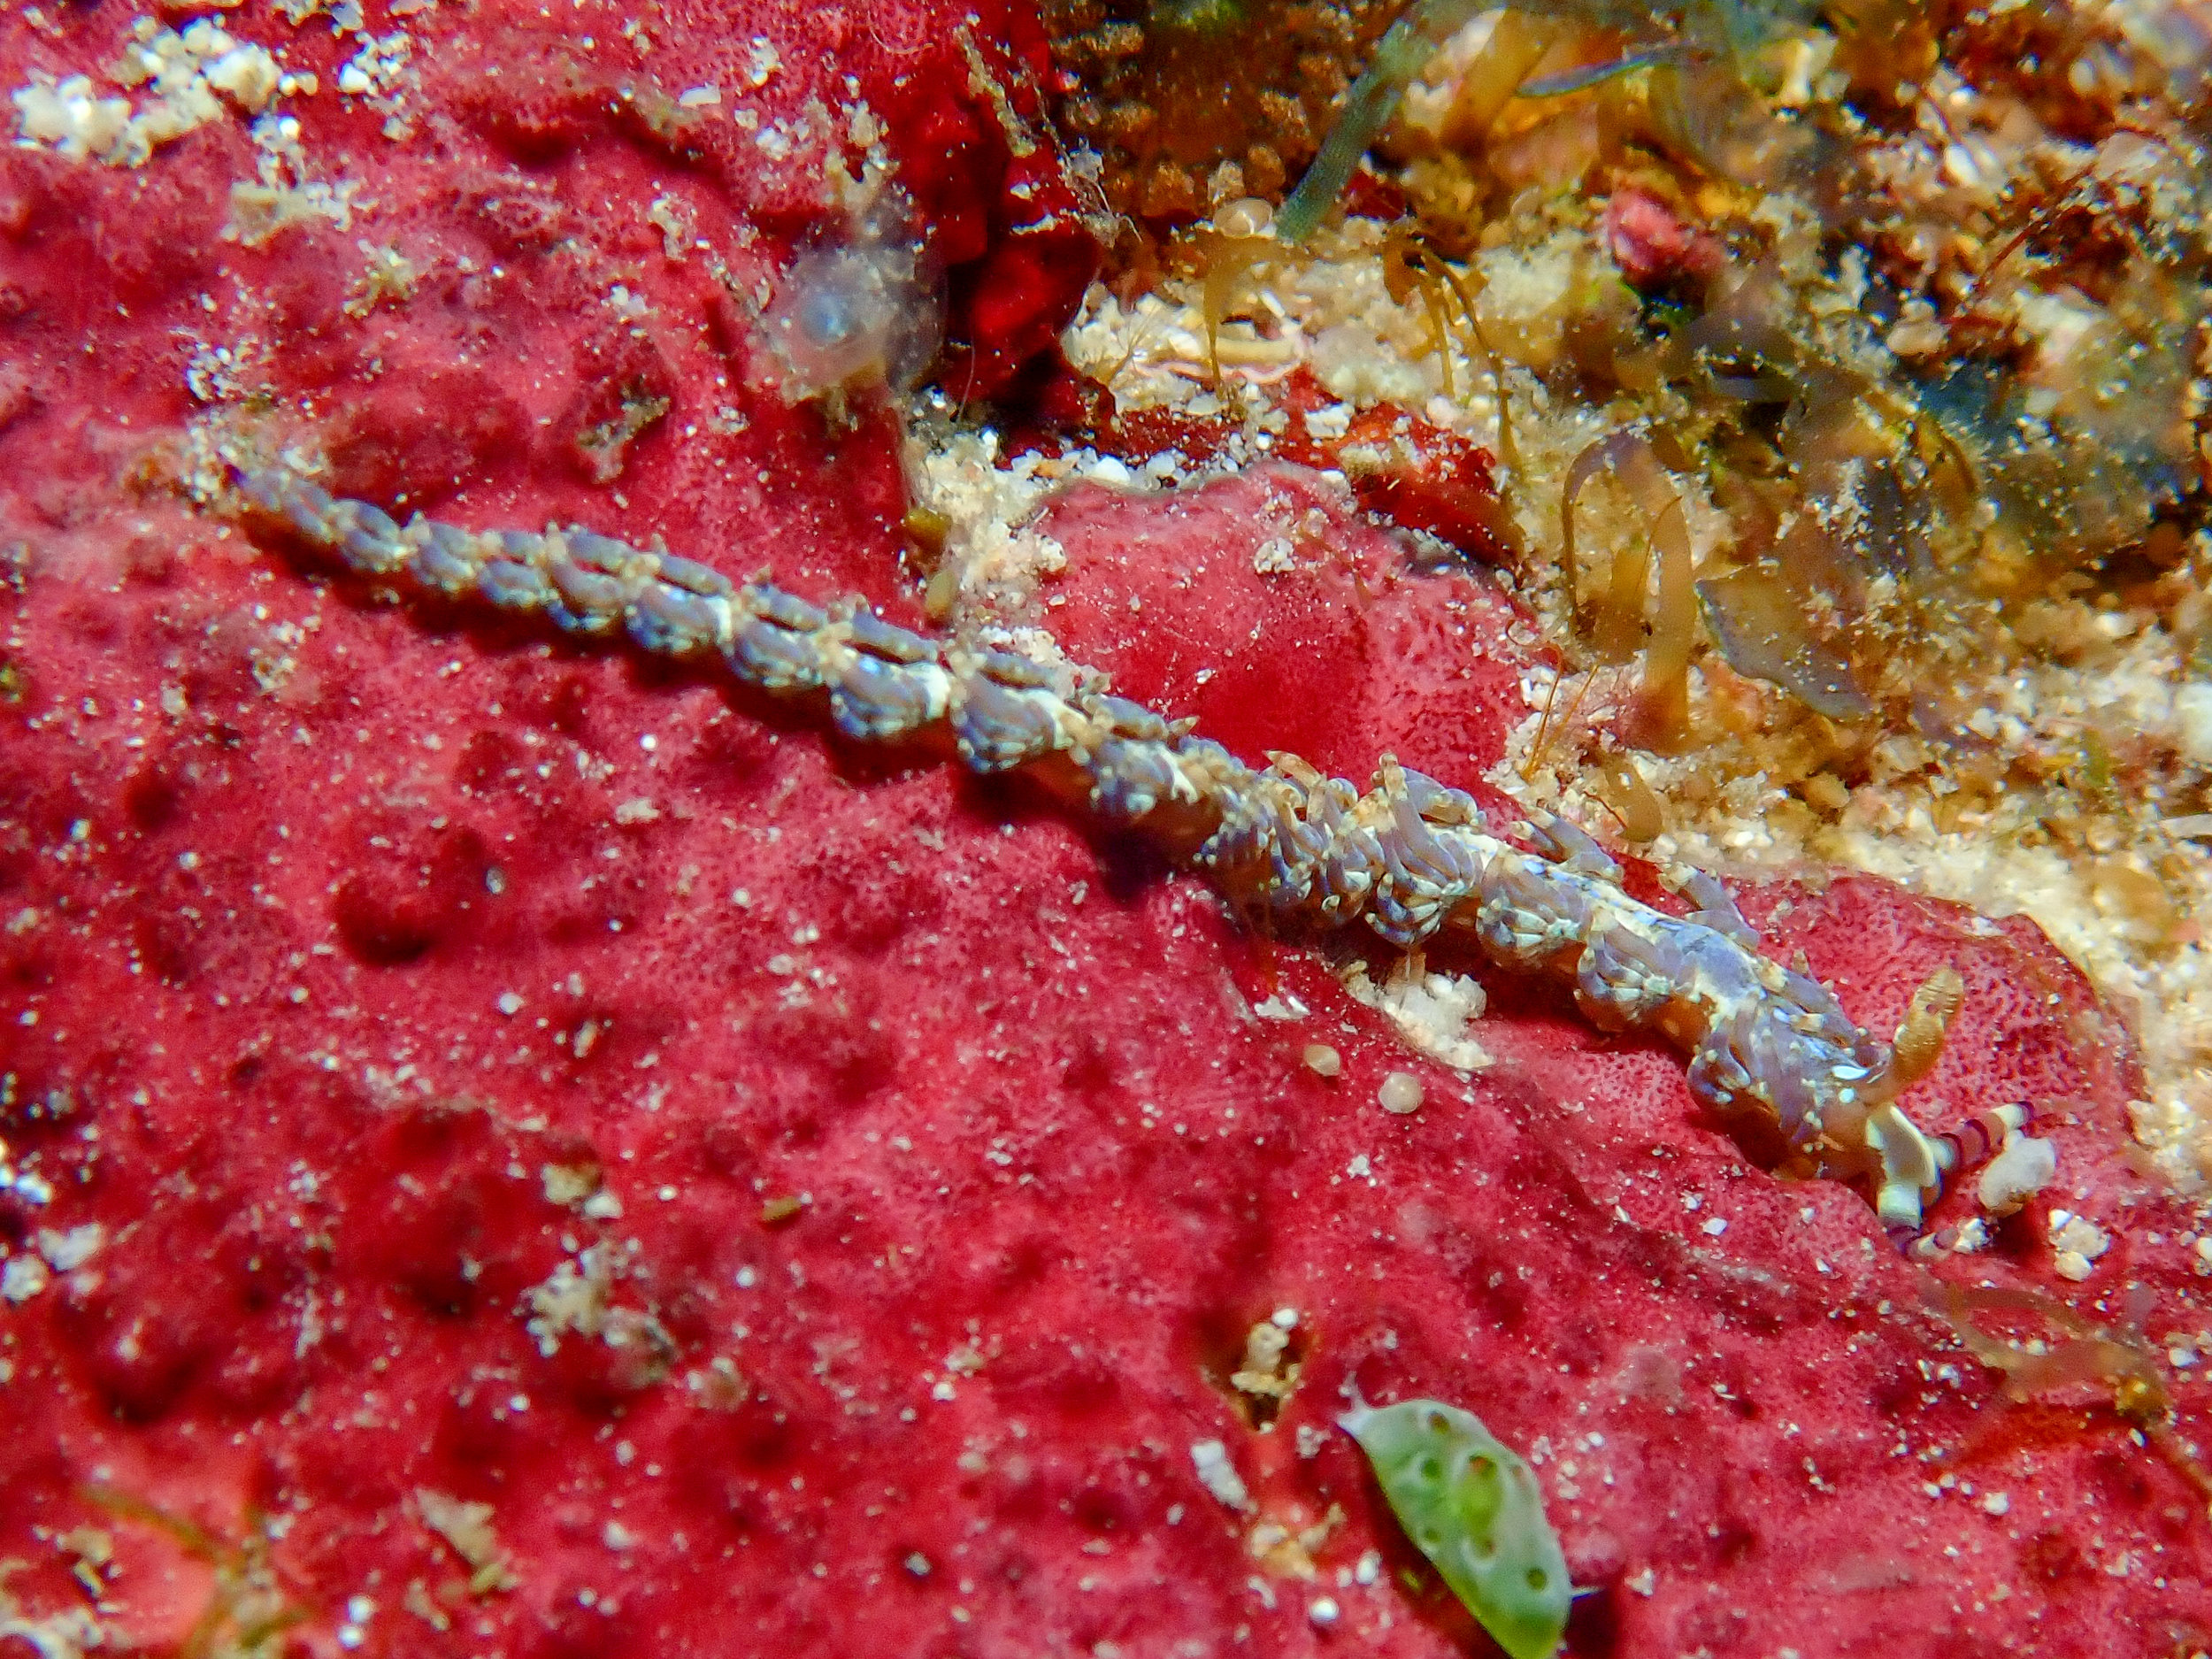 Pteraeolidia semperi nudibranch, Goru Arches, Witu Islands